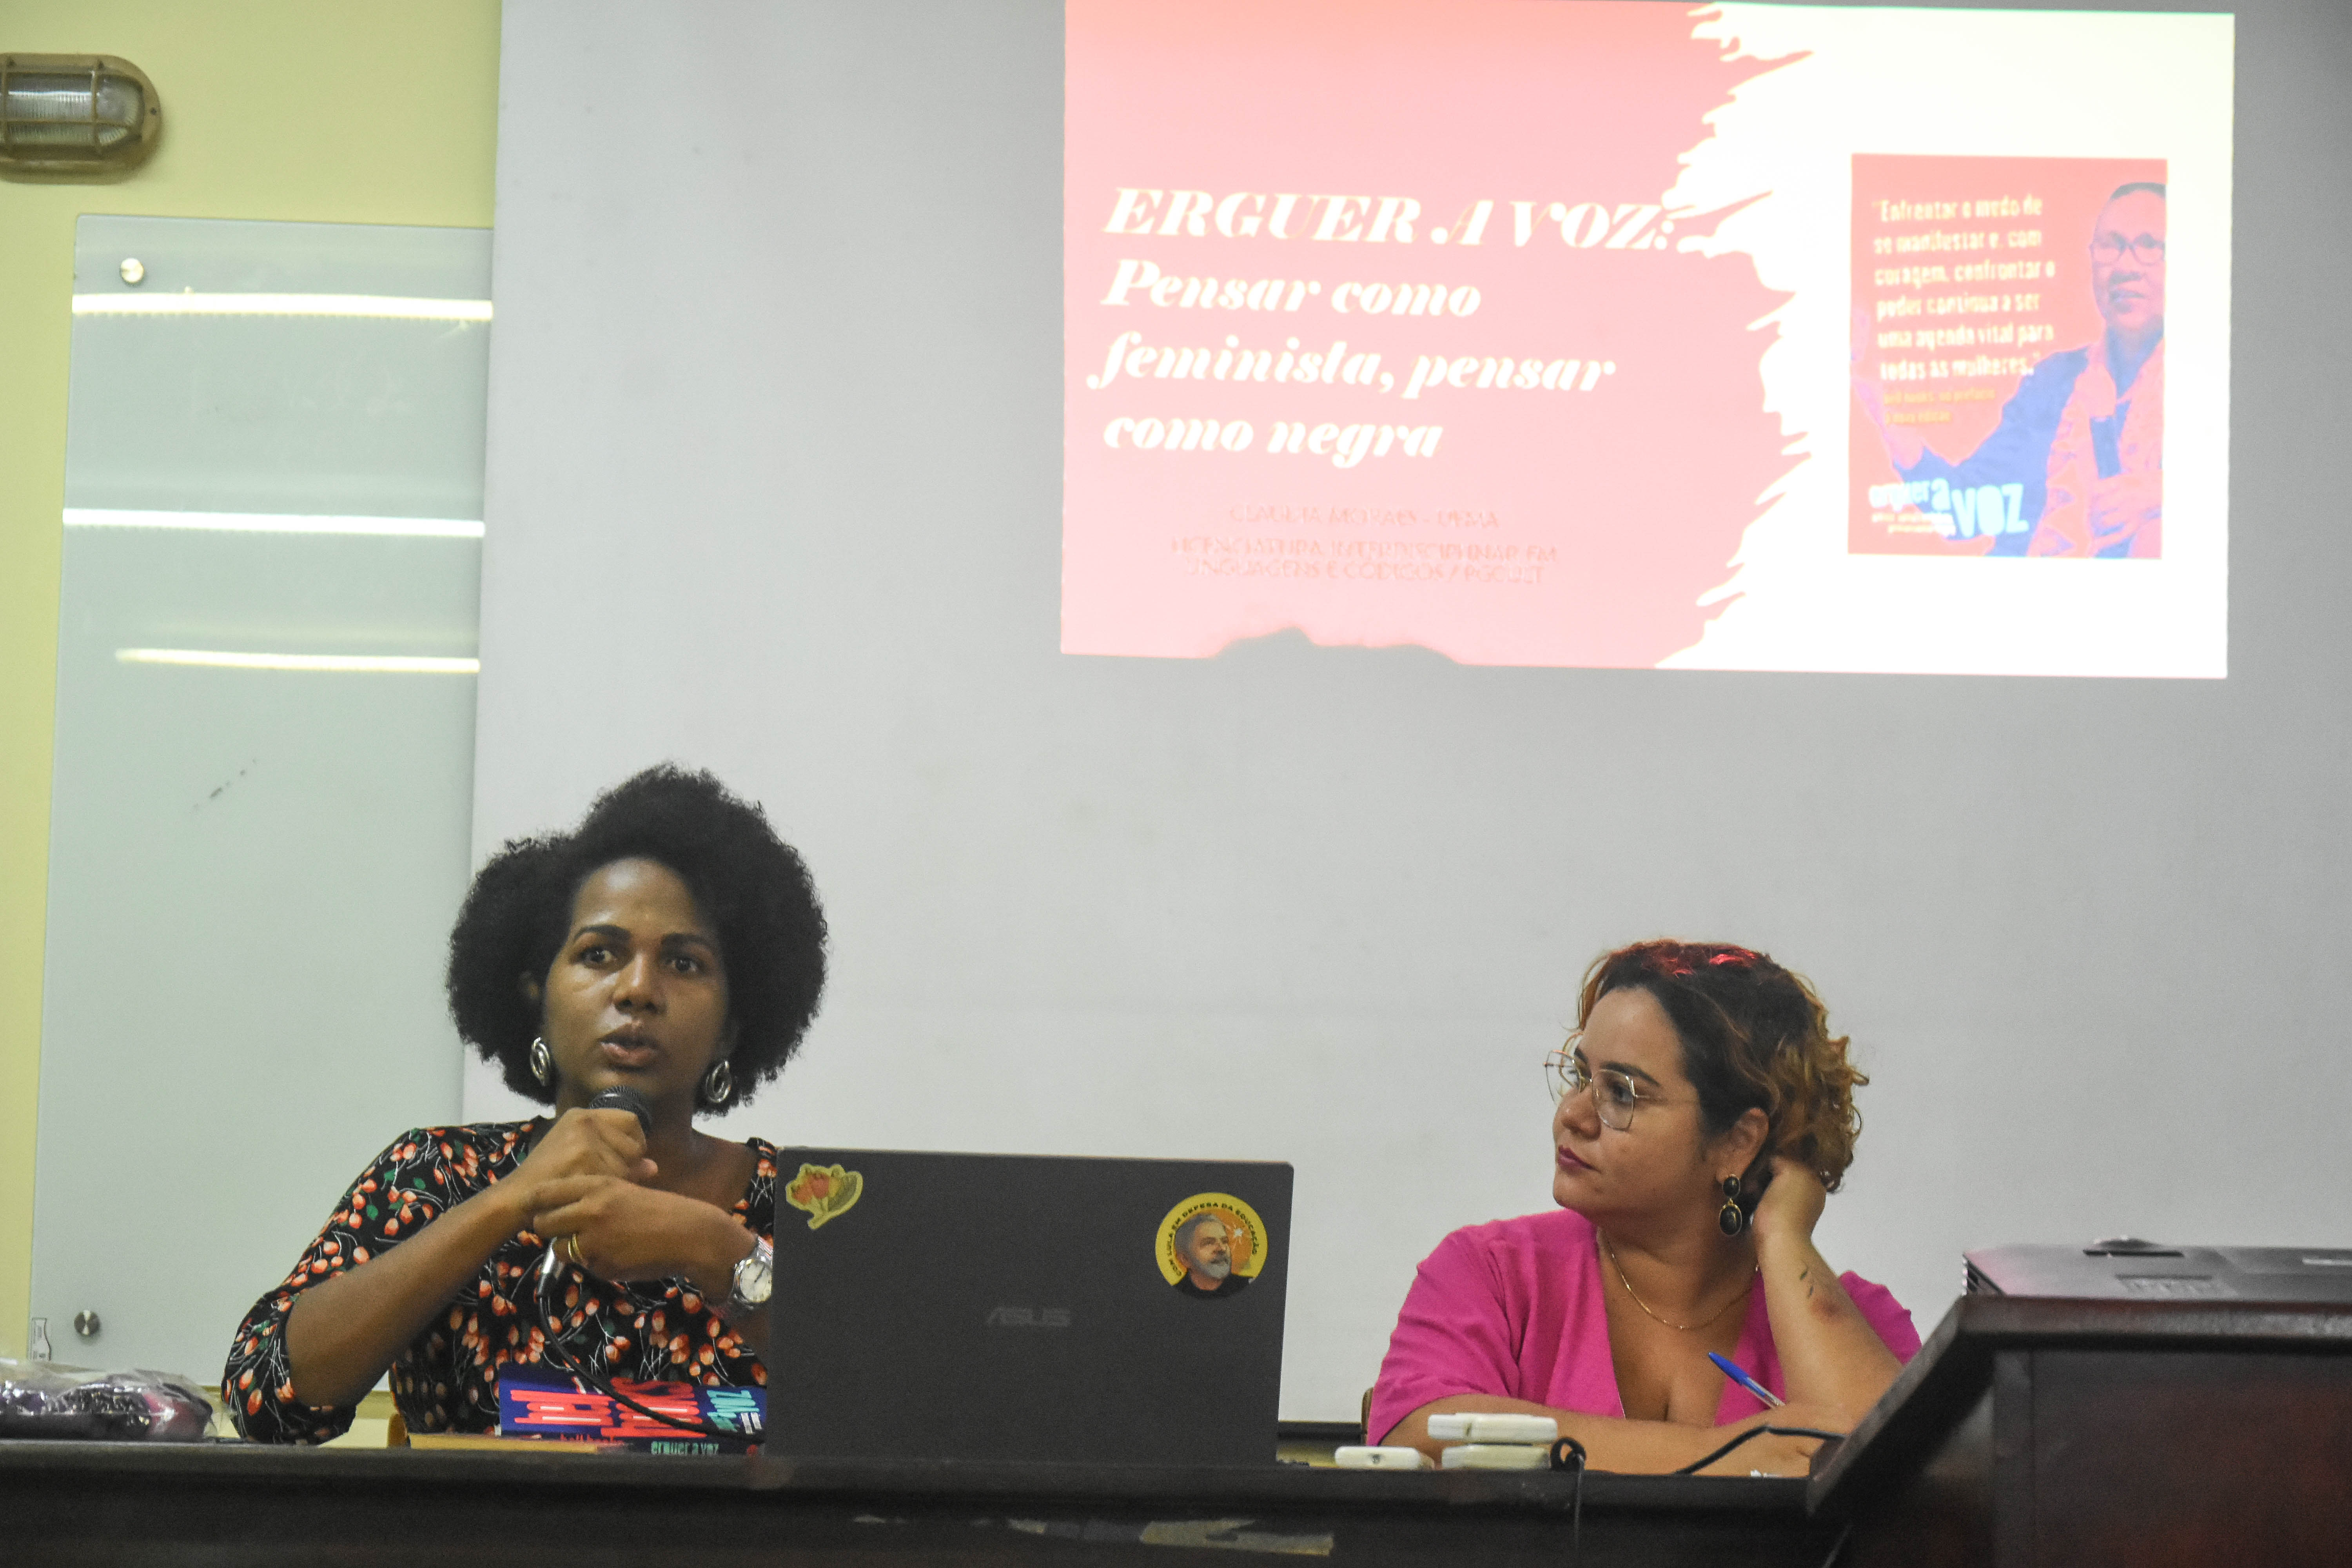 Grupos de Pesquisa e Movimento #ElasnaUFMA realizam encontro aberto “Erguer a Voz” no Centro de Ciências Sociais